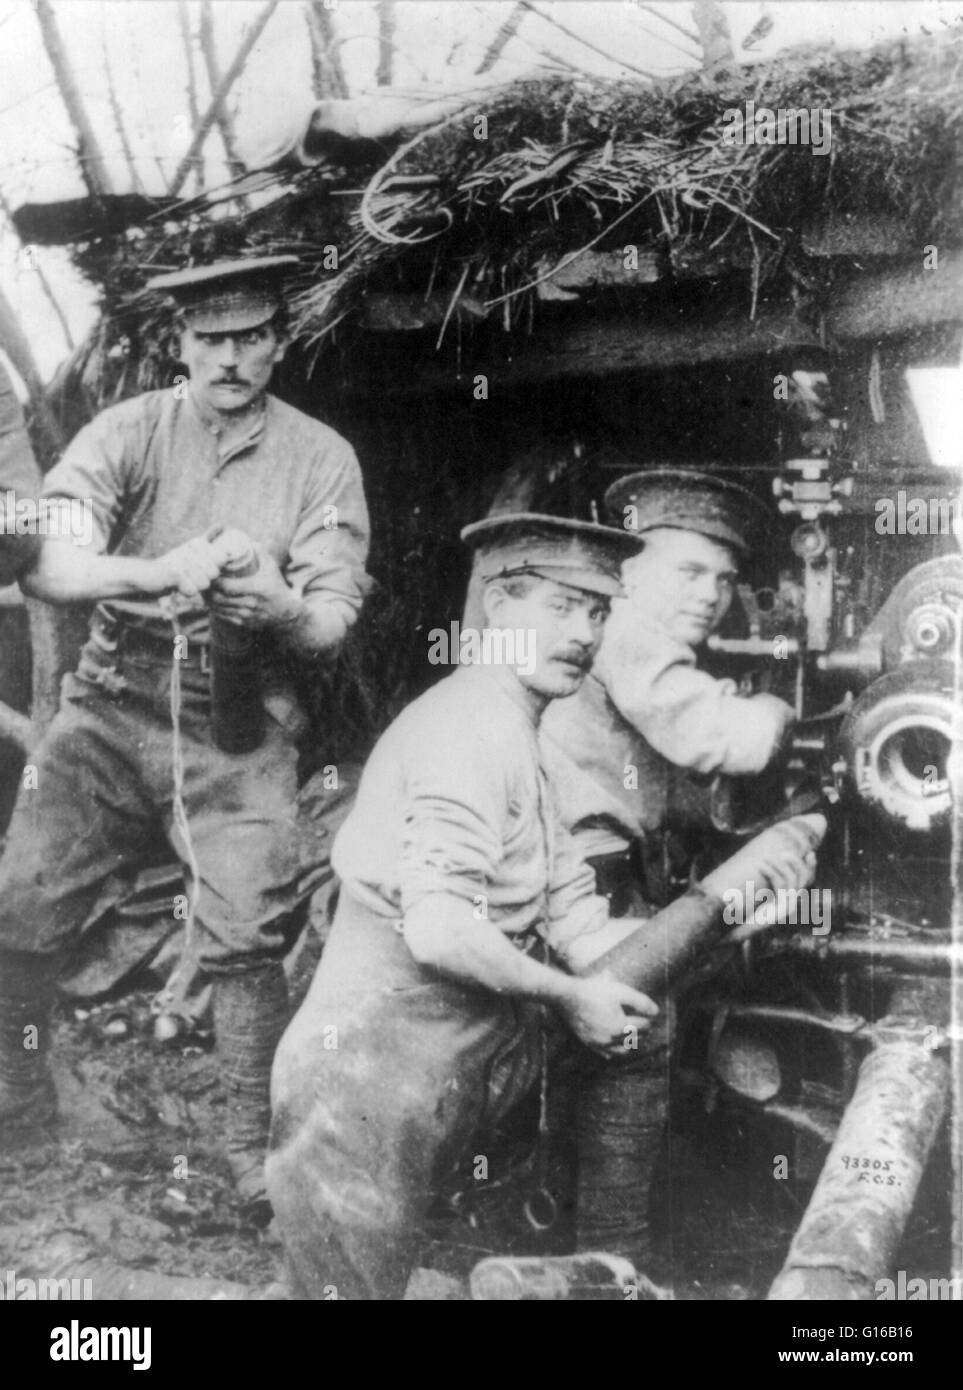 Les soldats britanniques le chargement d'un canon ou d'un bunker en obusier camouflés, 1915. Le début de la guerre de tranchées après les premiers mois de la Première Guerre mondiale a considérablement augmenté la demande pour les obusiers qui a donné un angle de descente raide, qui étaient mieux adaptés Banque D'Images